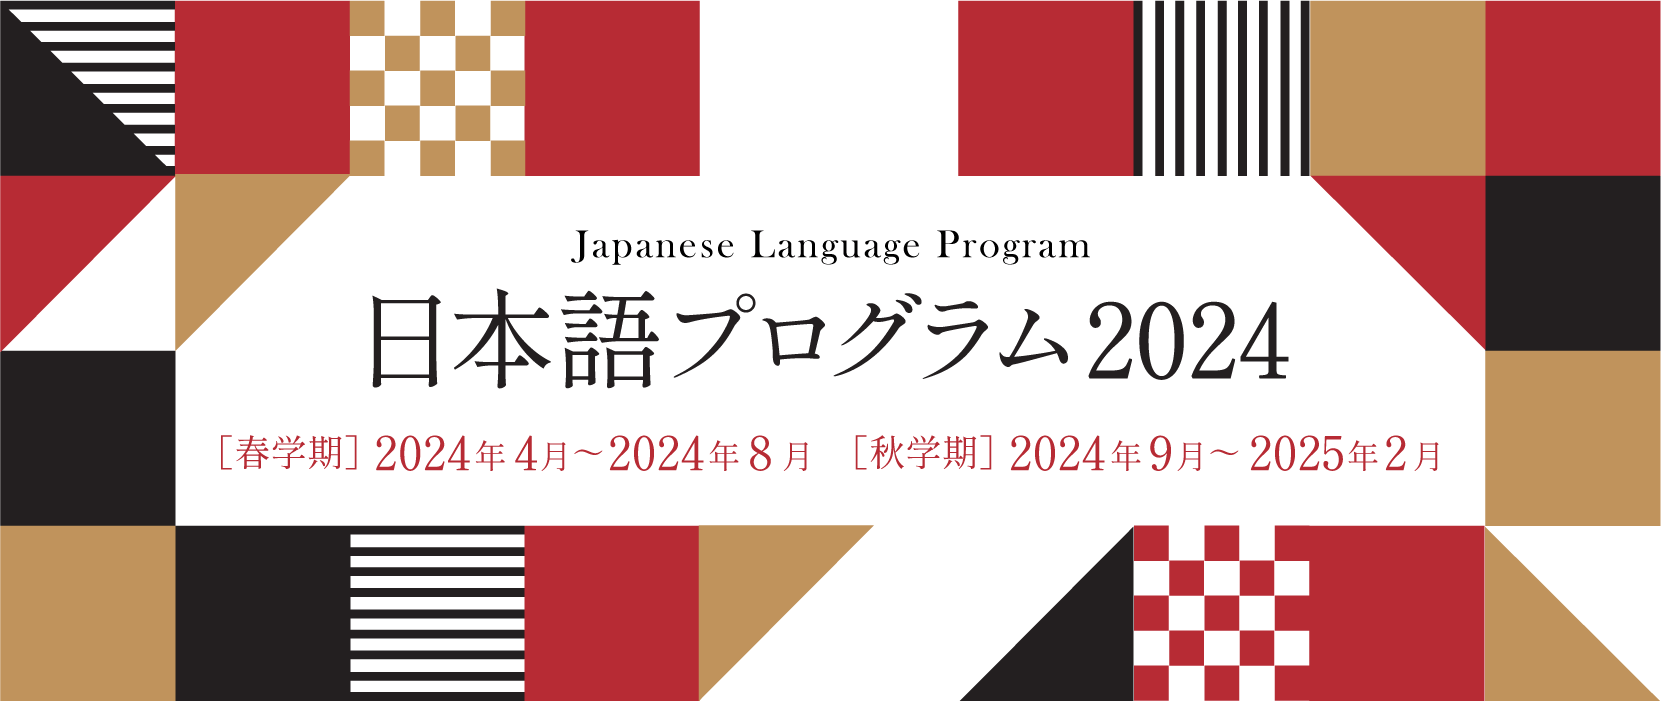 京都女子大学 日本語プログラム 2023